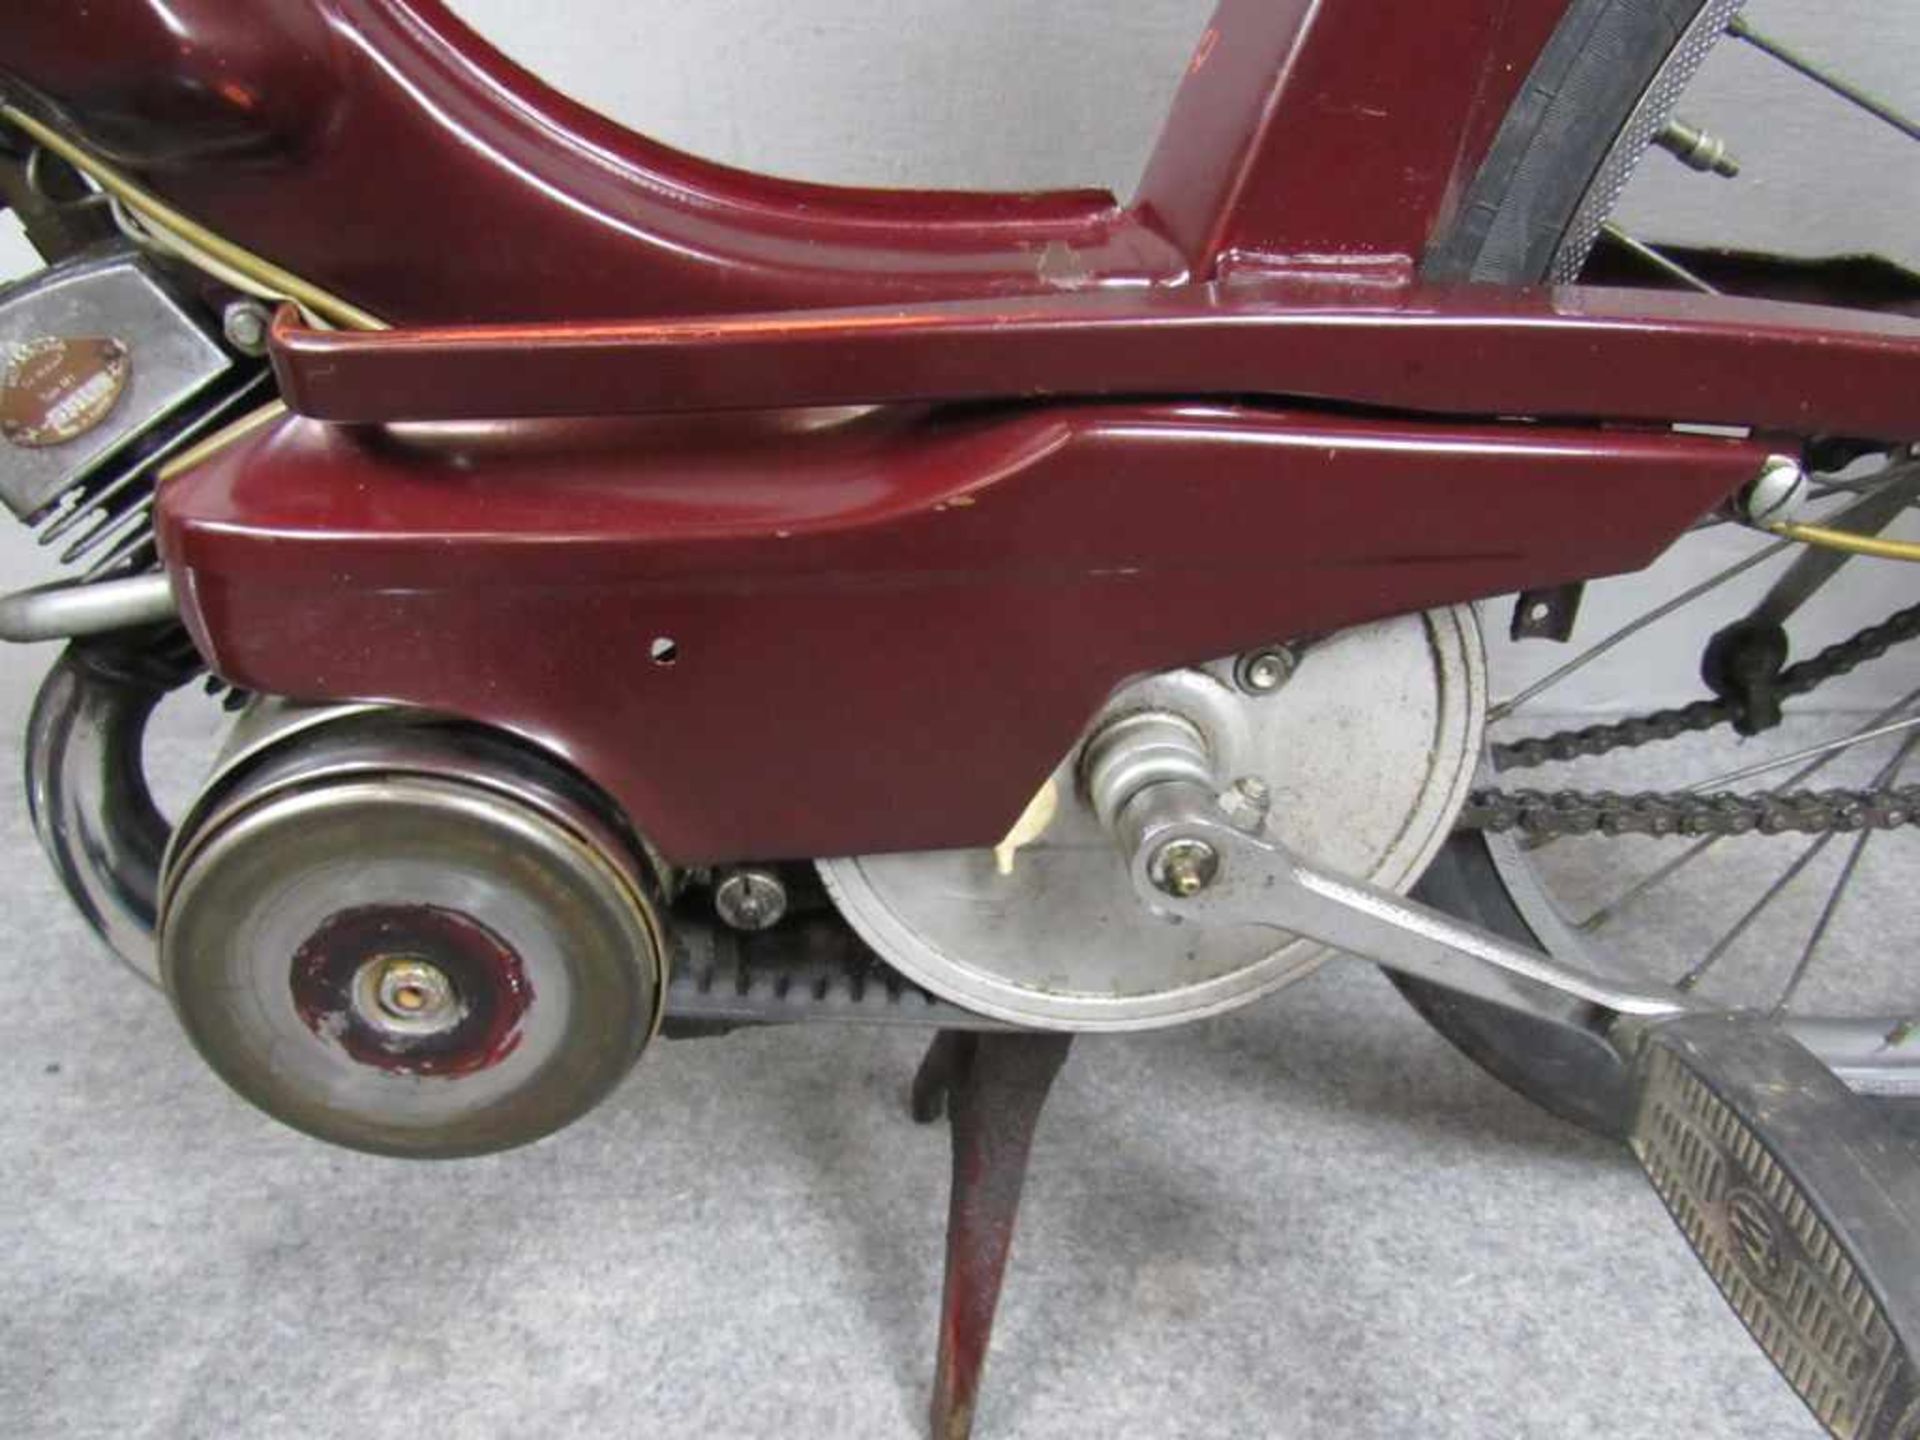 Mofa Modell Moby Hersteller Moto Becan Baujahr 60er Jahre sehr schöner allgemeiner Zustand alles - Image 7 of 9